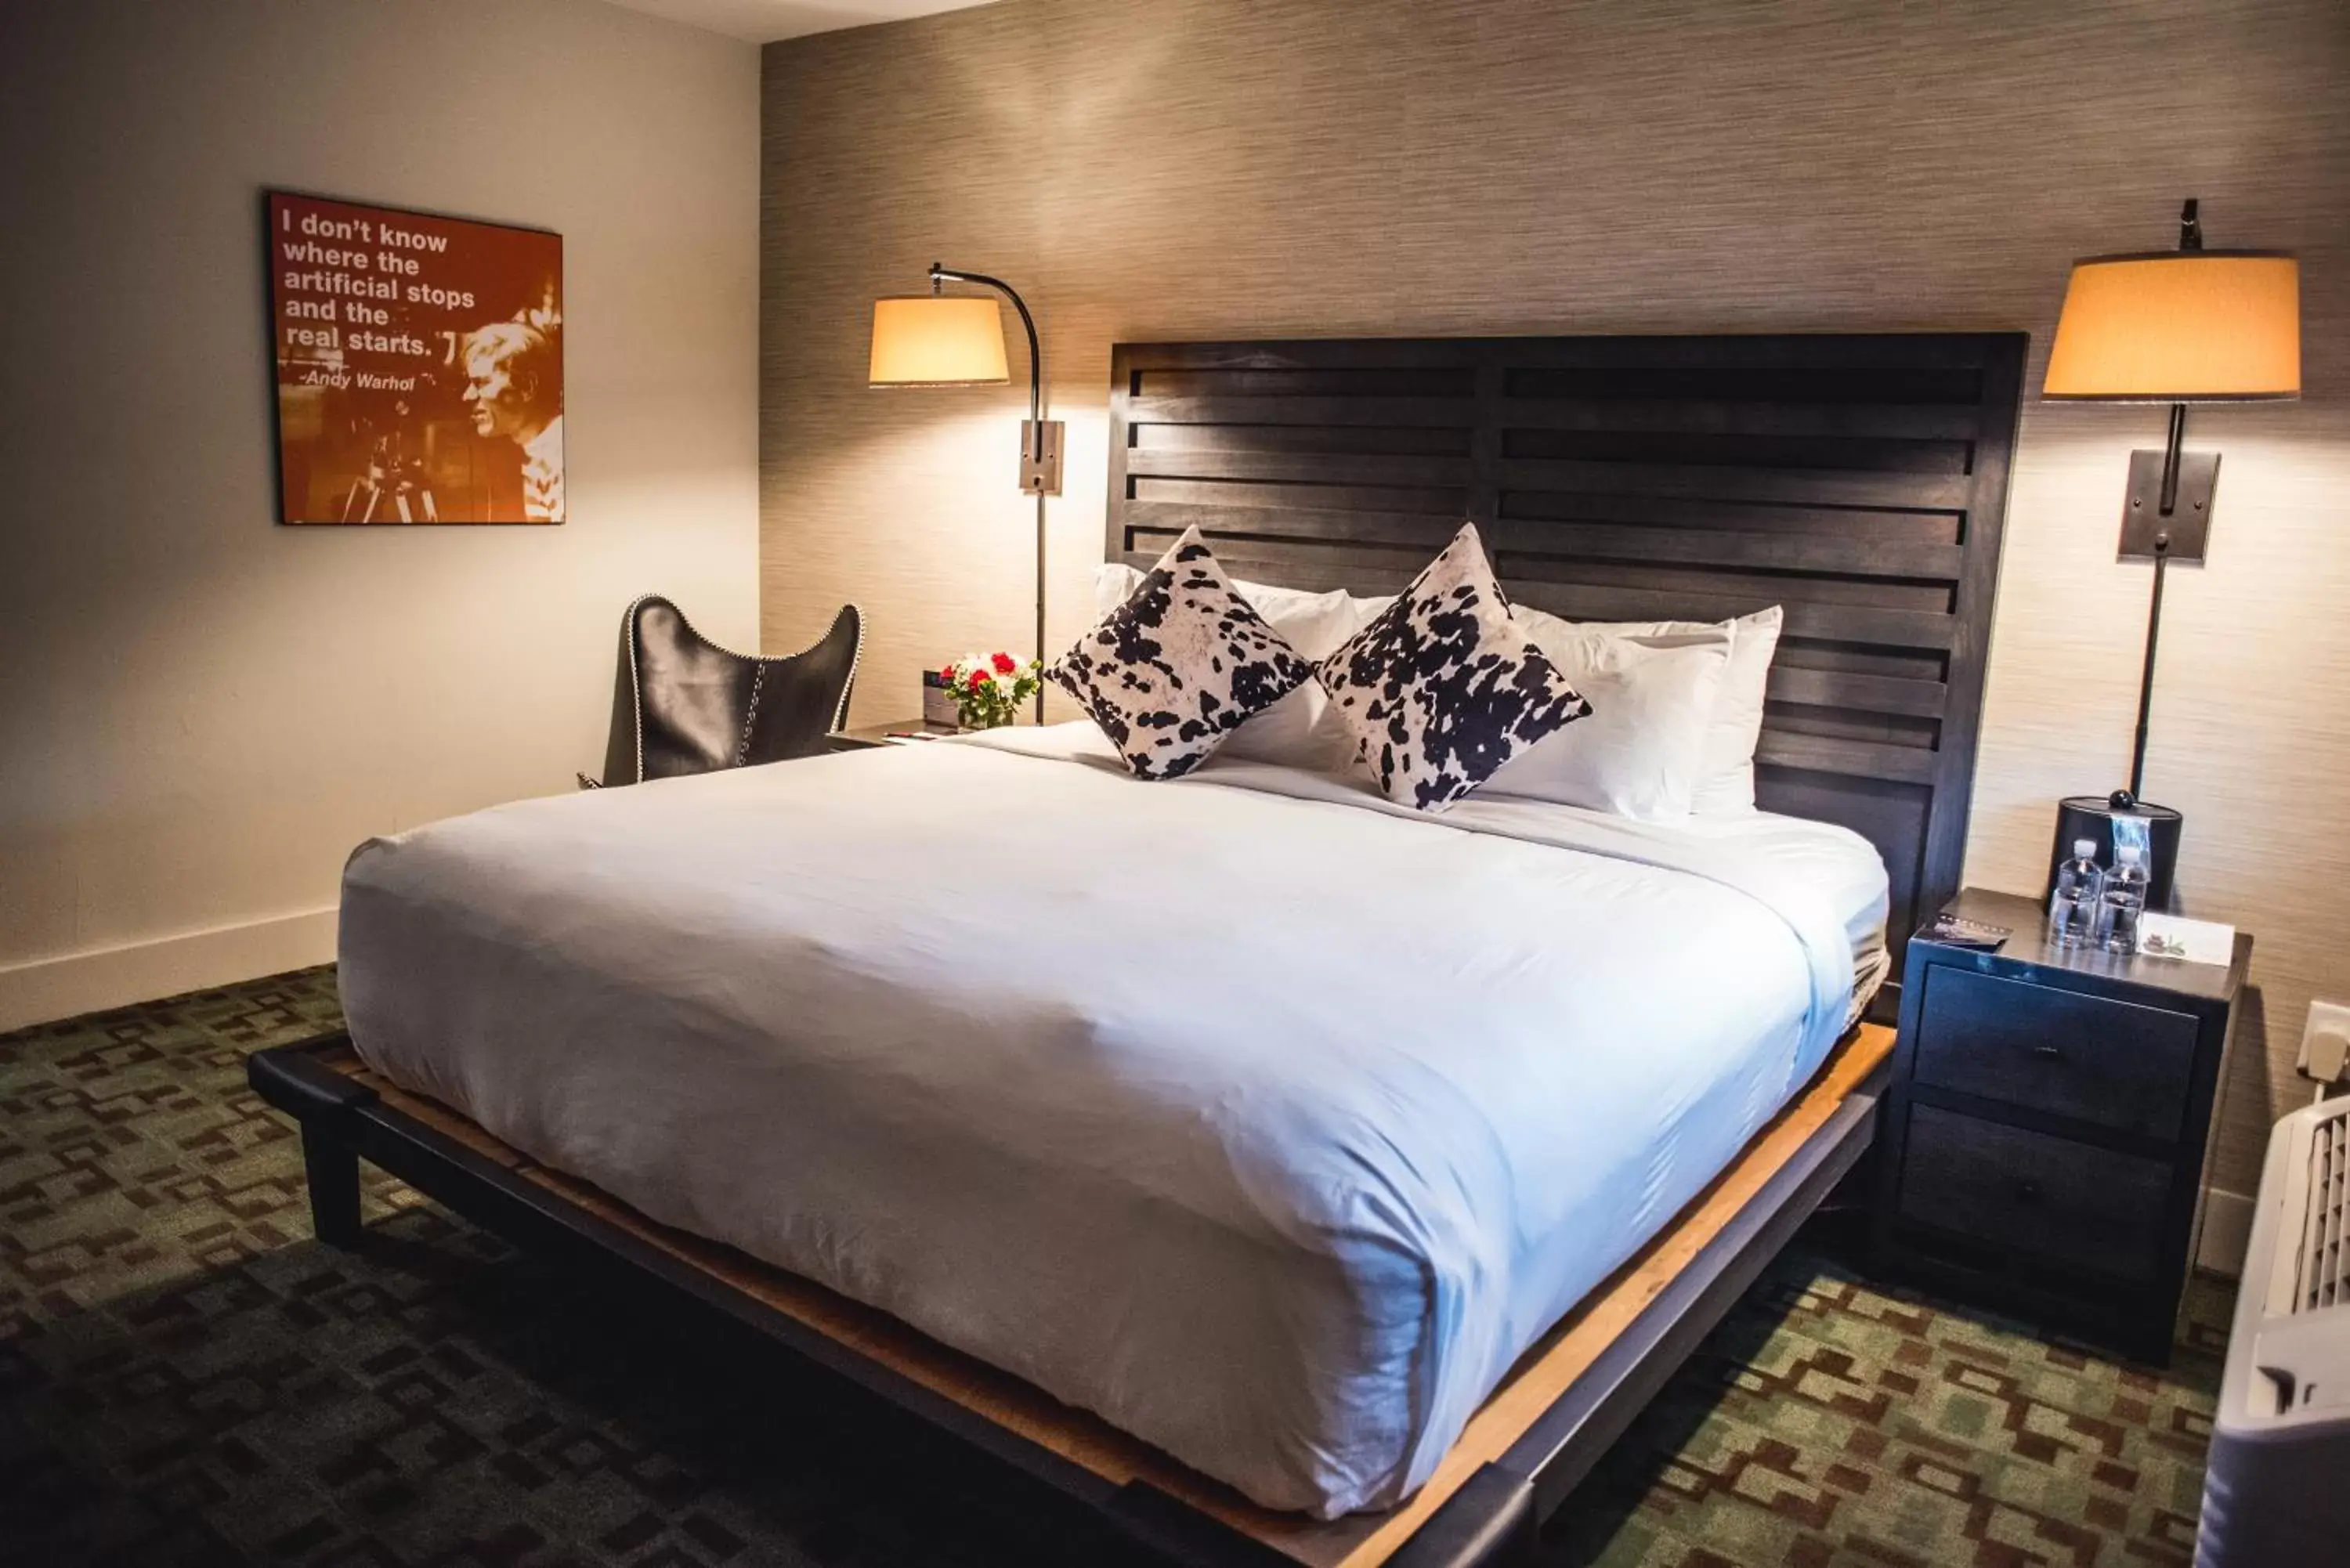 Bedroom, Bed in Hi-Ho: A Hi-Tech Hotel